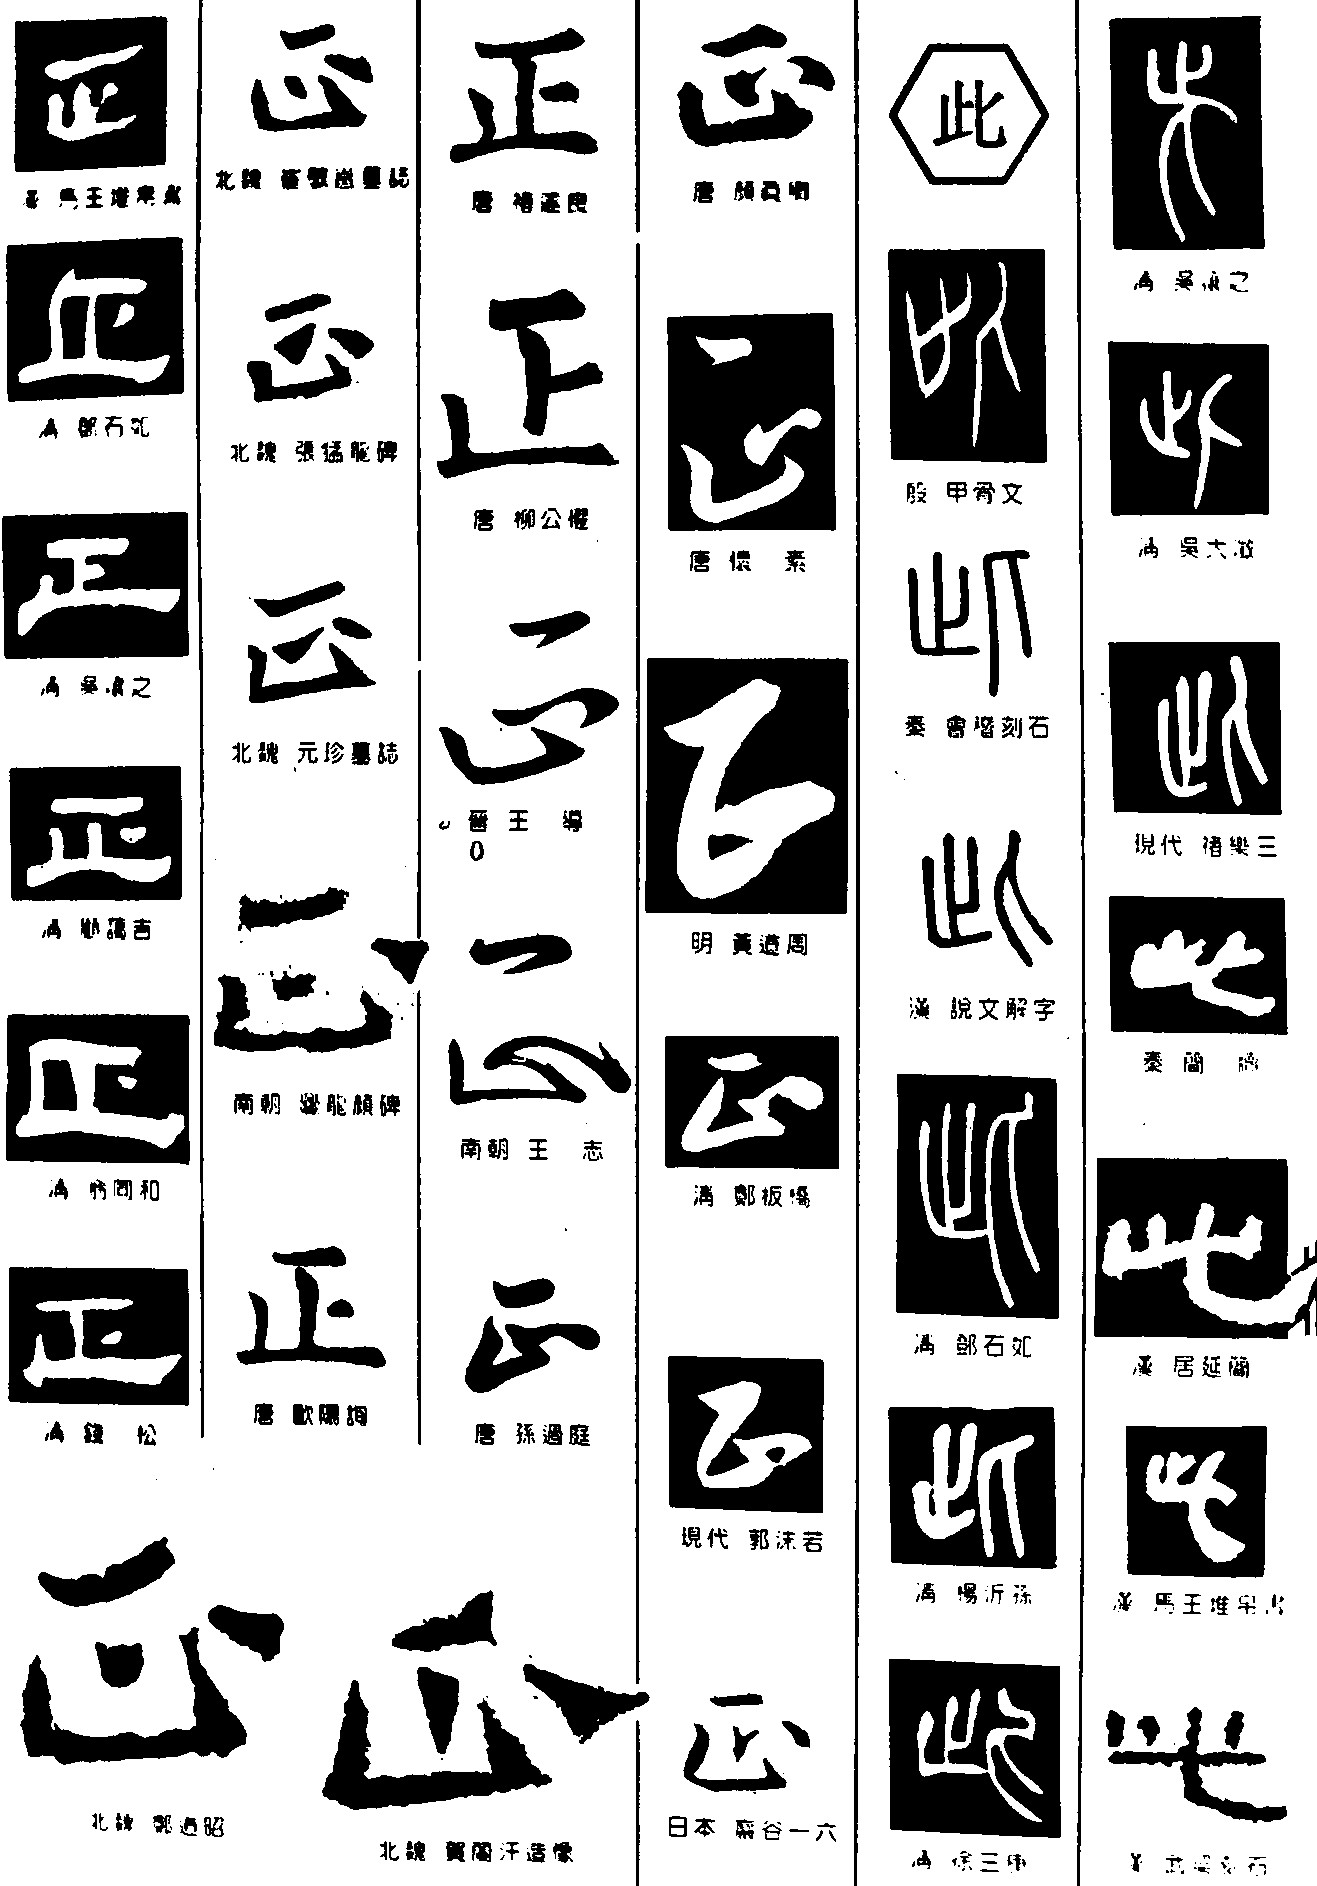 正此_书法字体_字体设计作品-中国字体设计网_ziti.